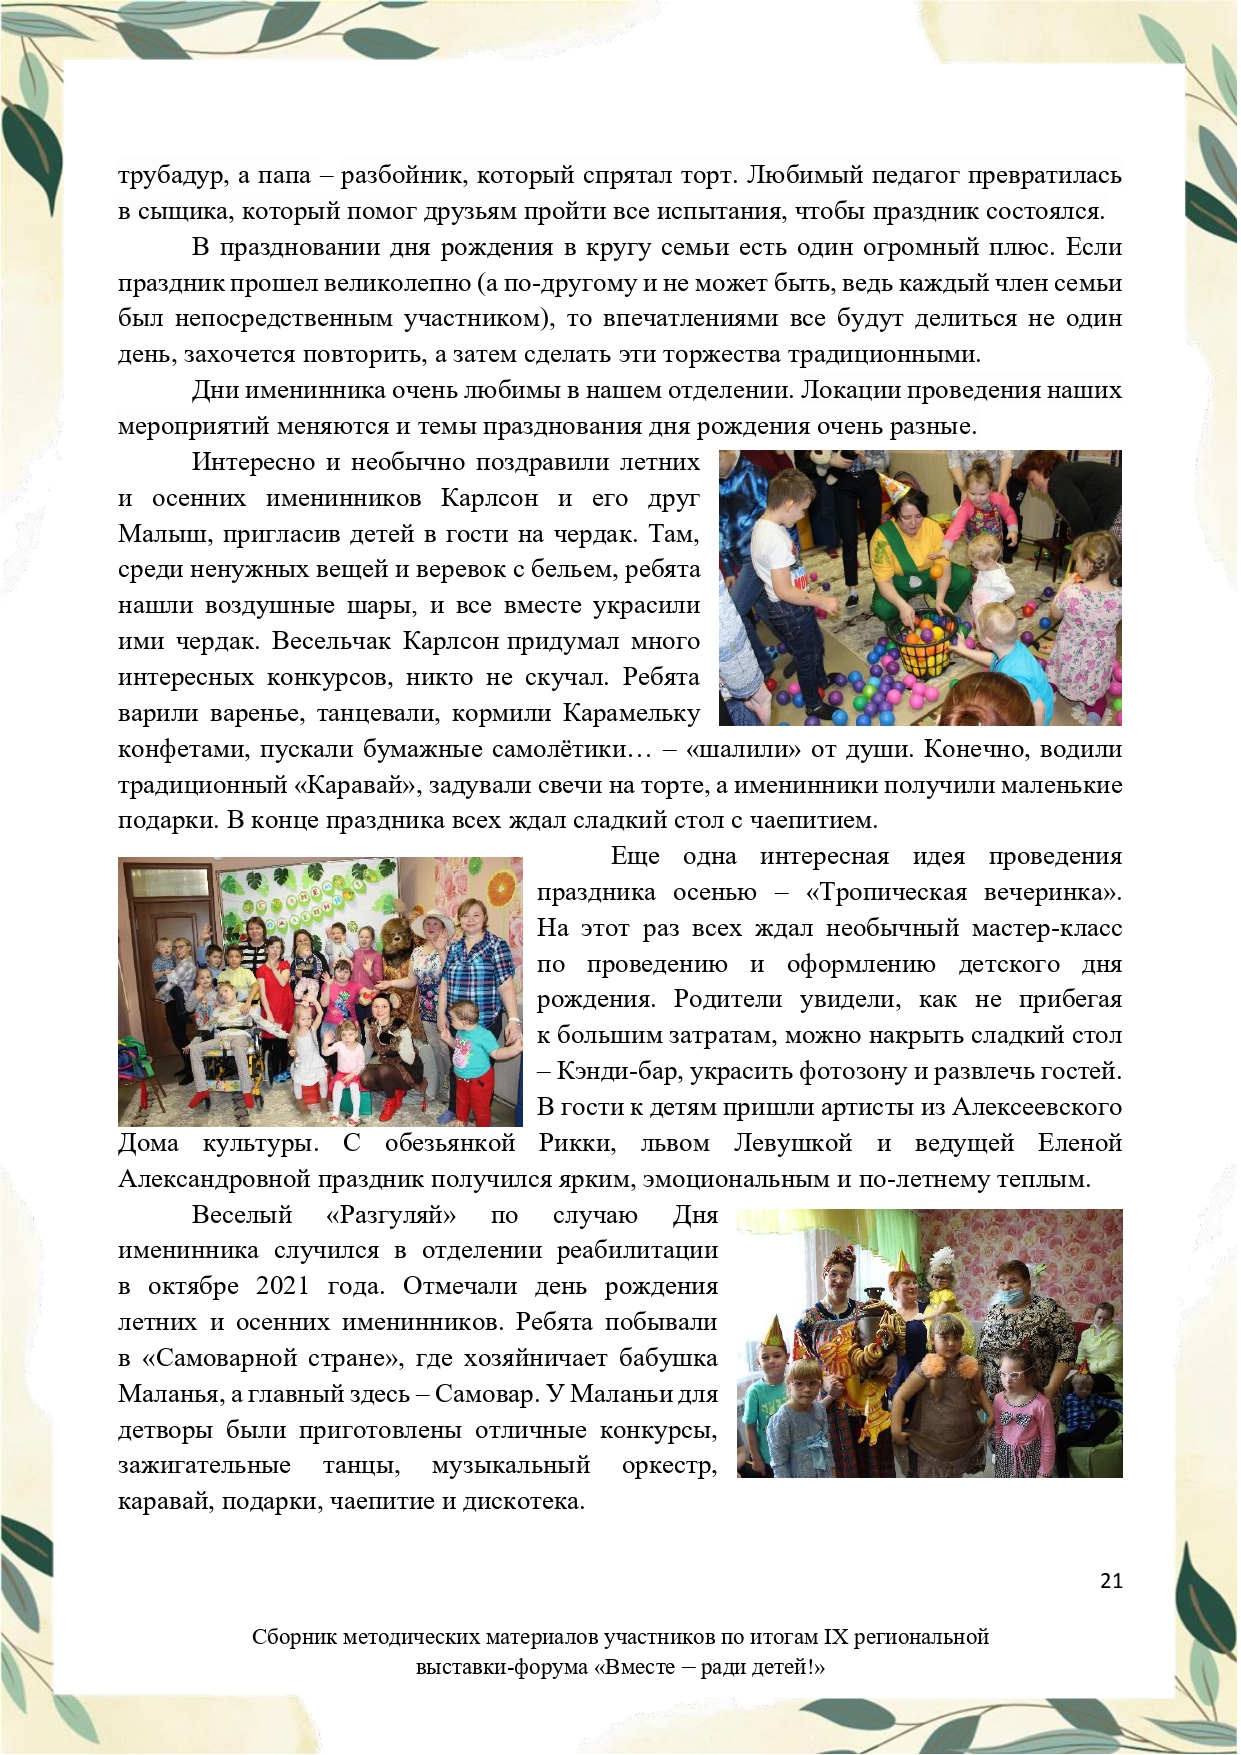 Sbornik_metodicheskikh_materialov_uchastnikov_IX_regionalnoy_vystavki-foruma_Vmeste__radi_detey_33__2023_page-0021